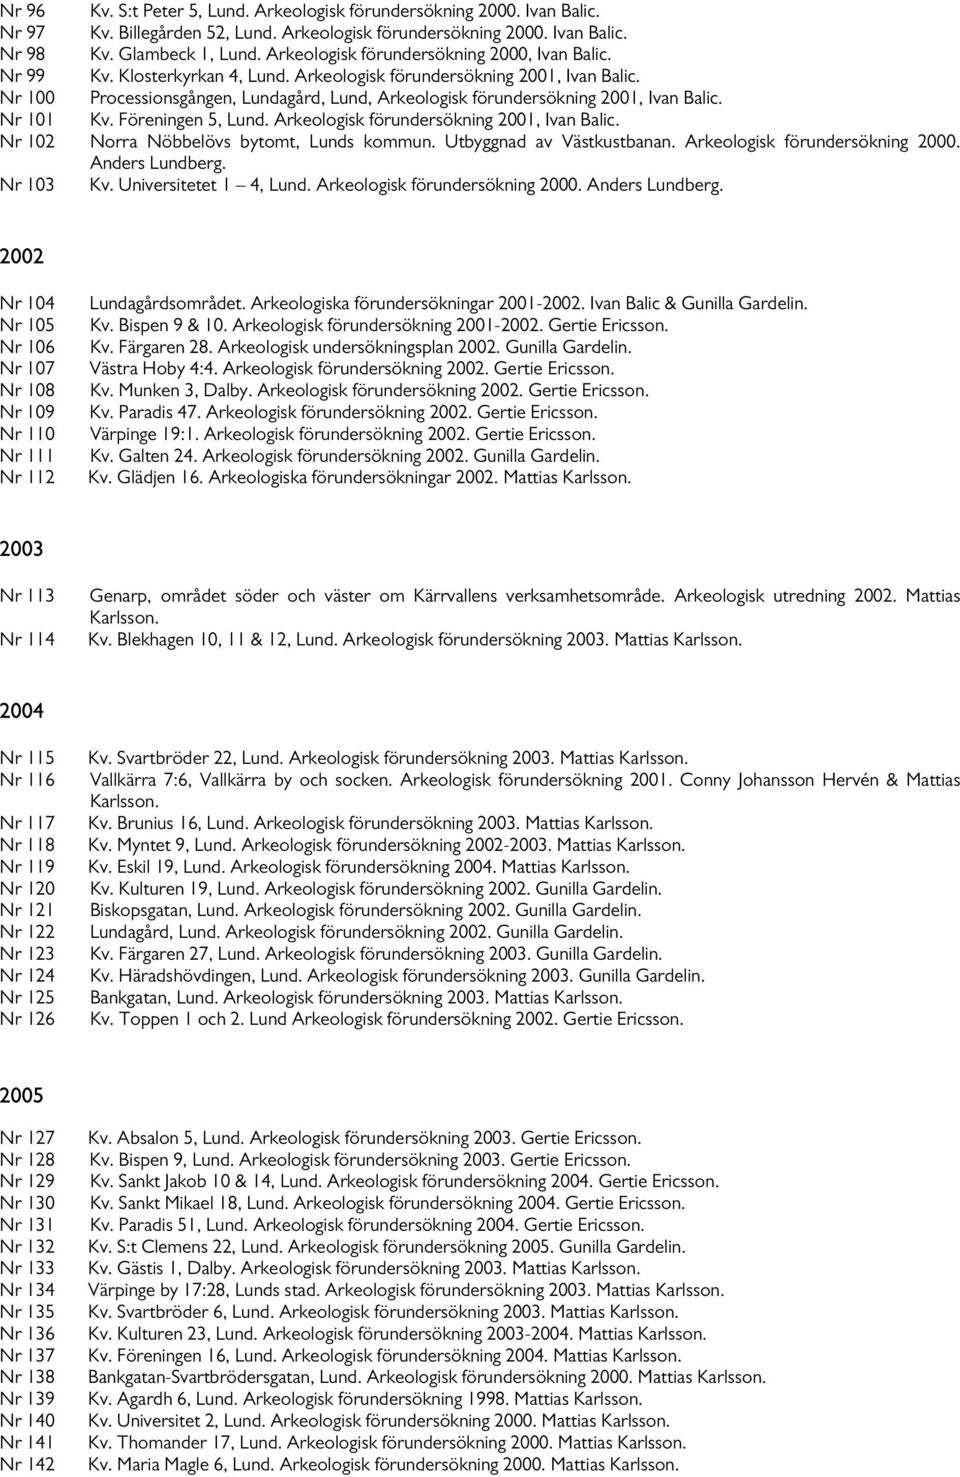 Nr 100 Processionsgången, Lundagård, Lund, Arkeologisk förundersökning 2001, Ivan Balic. Nr 101 Kv. Föreningen 5, Lund. Arkeologisk förundersökning 2001, Ivan Balic. Nr 102 Norra Nöbbelövs bytomt, Lunds kommun.